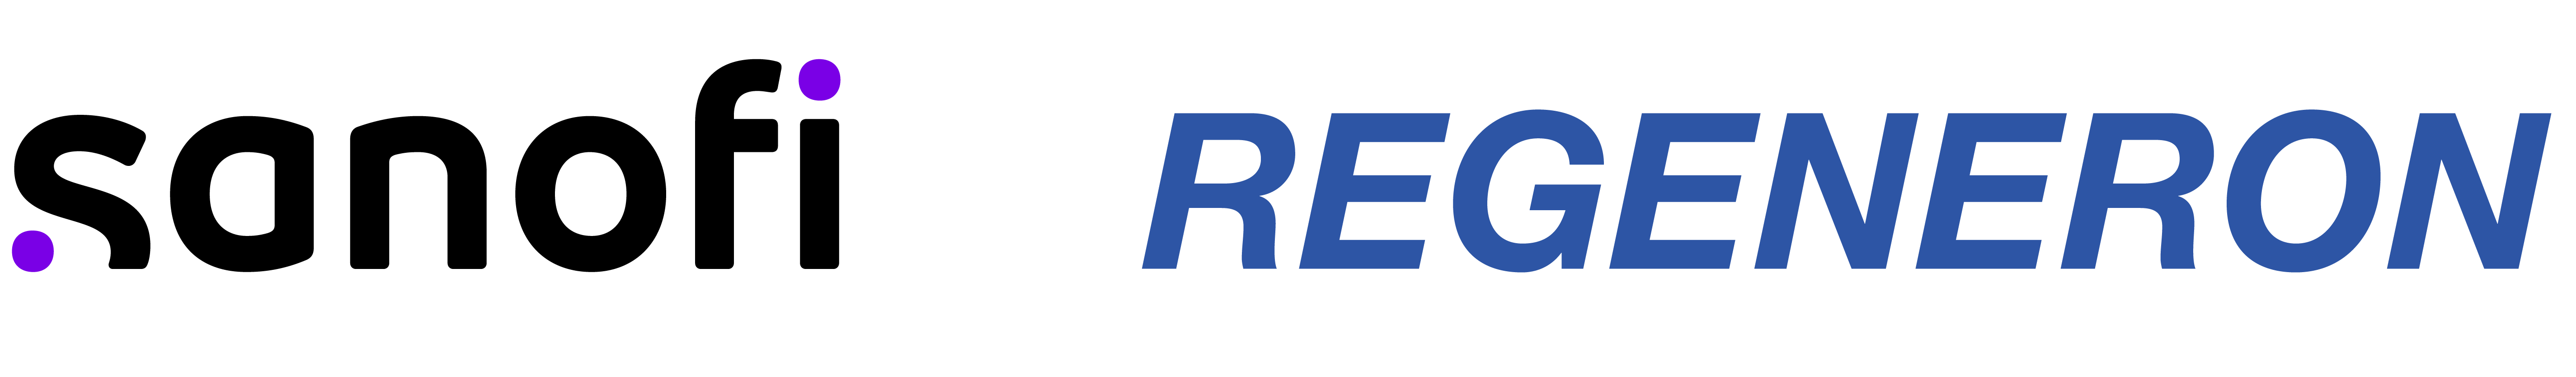 Sanofi Regeneron Logos RGB Horizontal